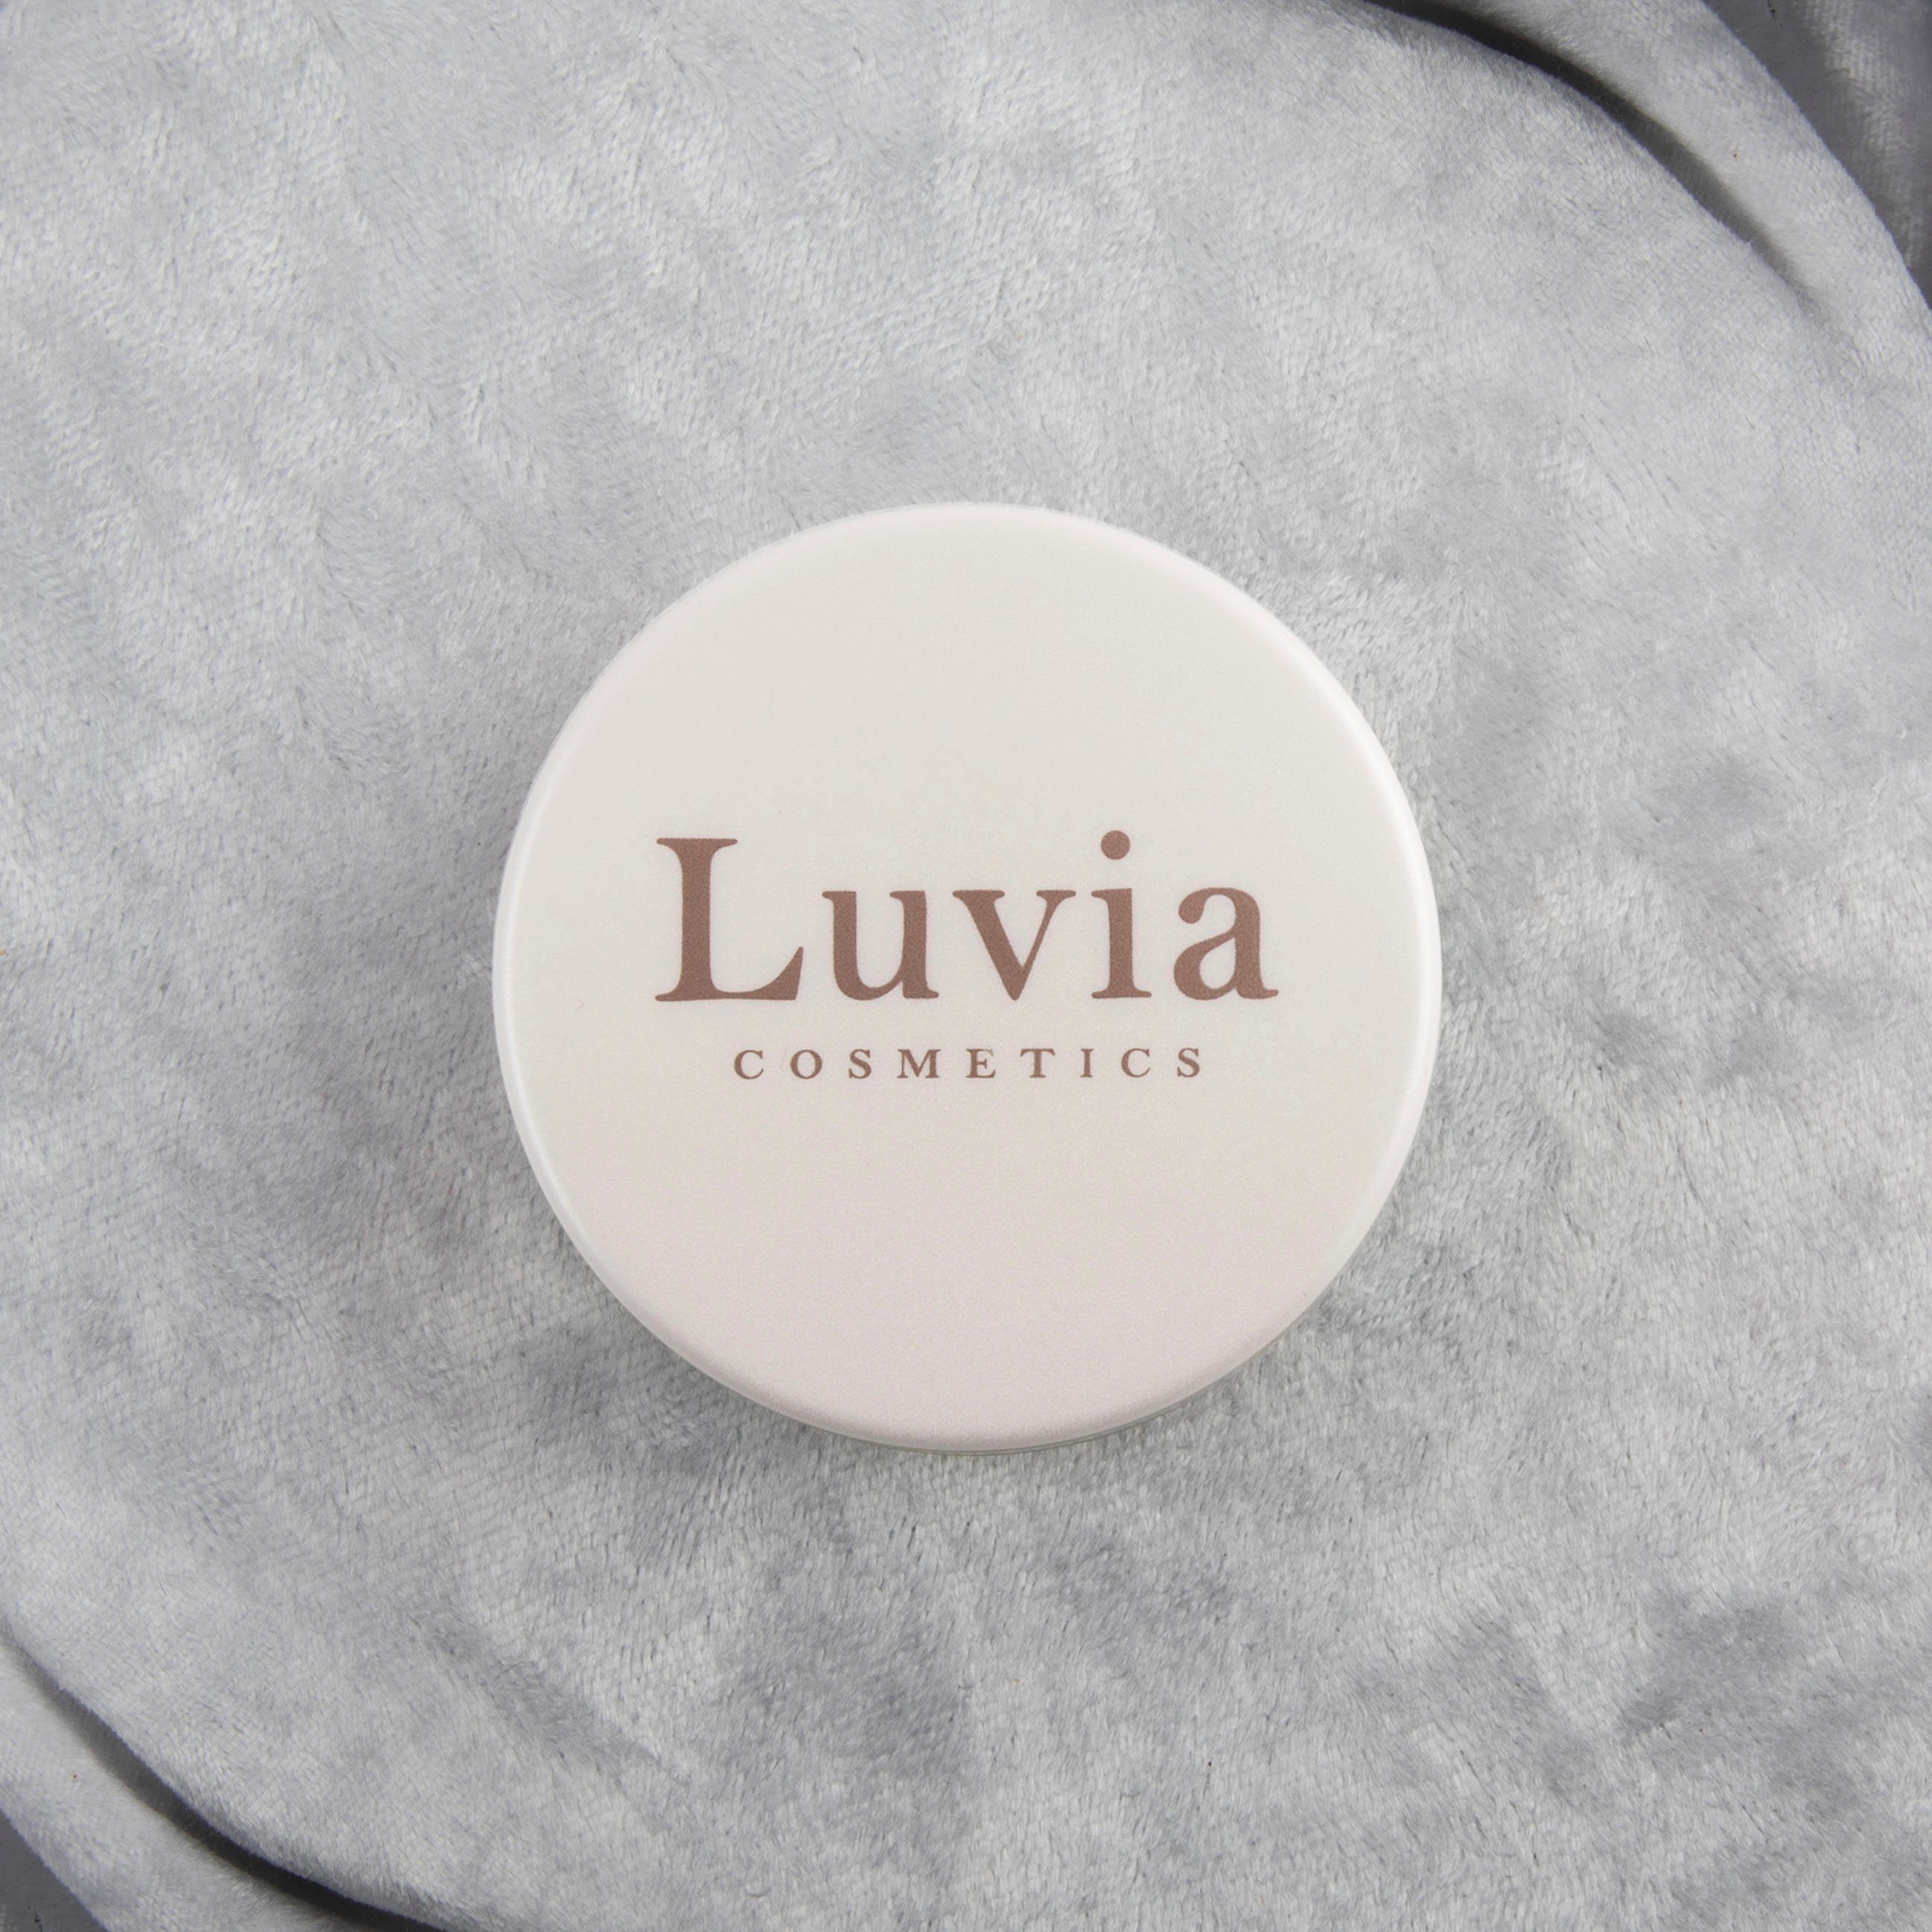 Brow Styling Gel Cosmetics Luvia Lidschatten-Palette